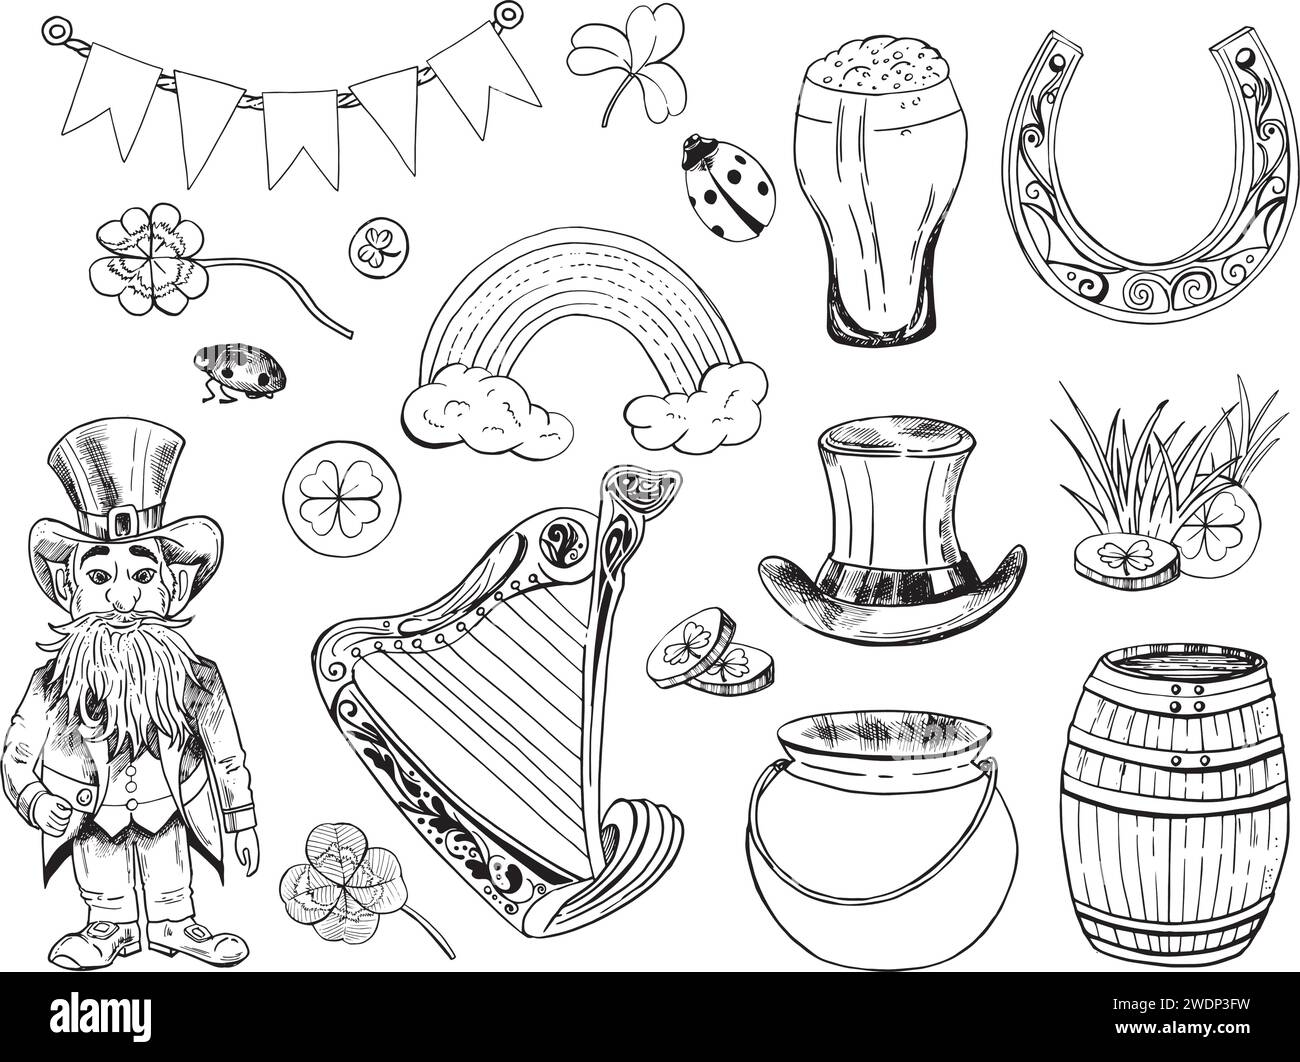 St. Patrick dessiné à la main Doodle Line Art Outline Set contenant Leprechaun, pièces d'or, chapeau haut de gamme, harpe, barbe, arc-en-ciel, bottes, Shamrock, pot, fer à cheval, Illustration de Vecteur